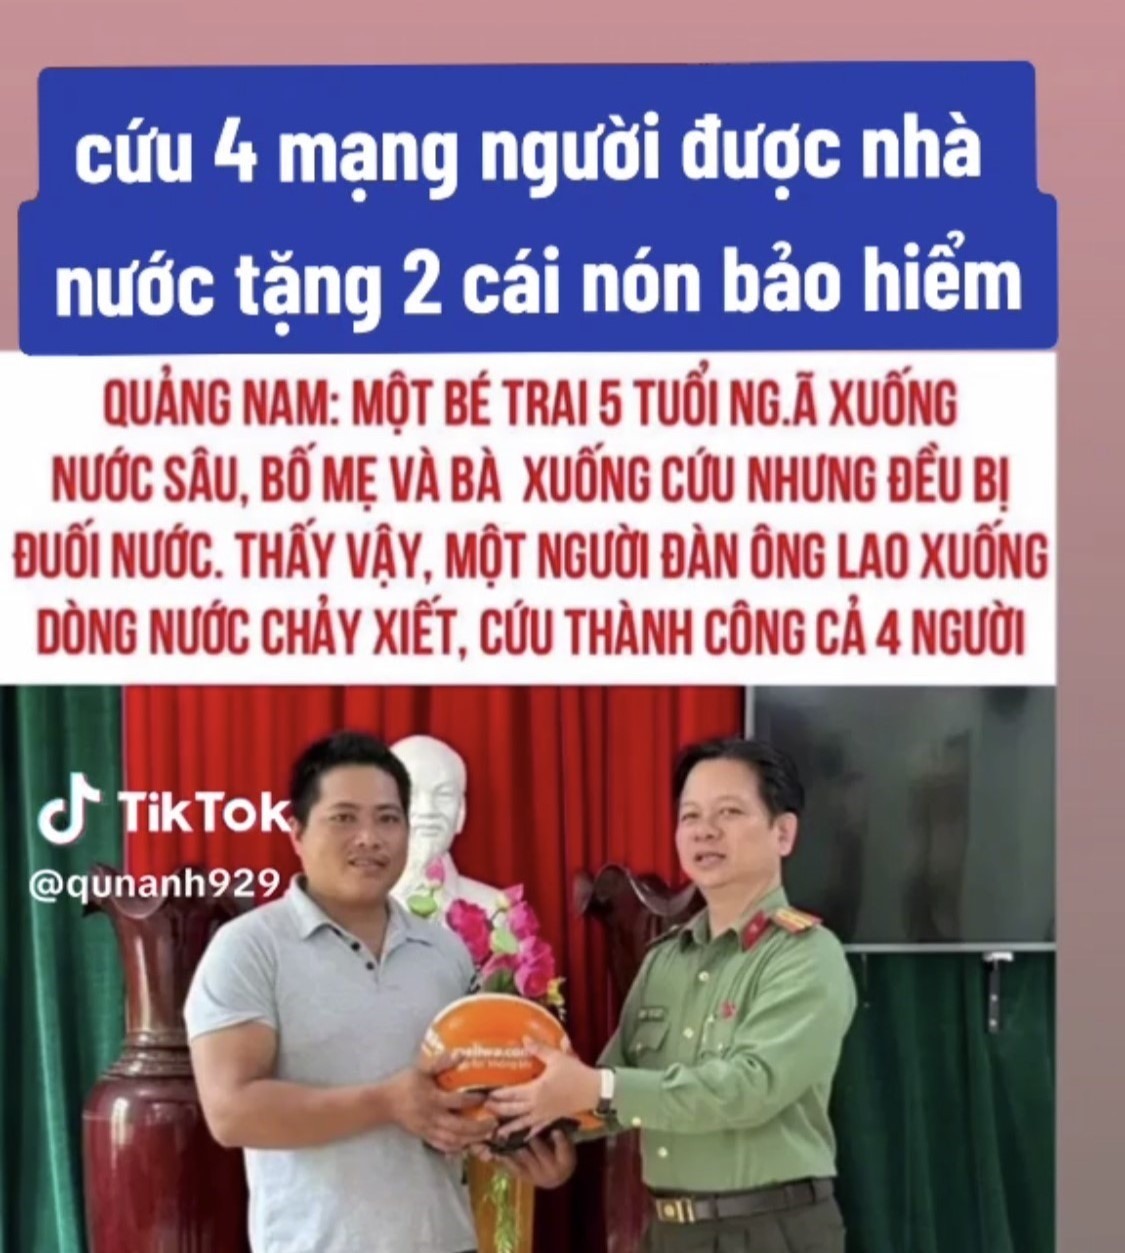 Bài đăng của Tiktoker qunanh929 về vụ cứu 4 người đuối nước được tặng 2 mũ bảo hiểm. Ảnh chụp màn hình Tiktok